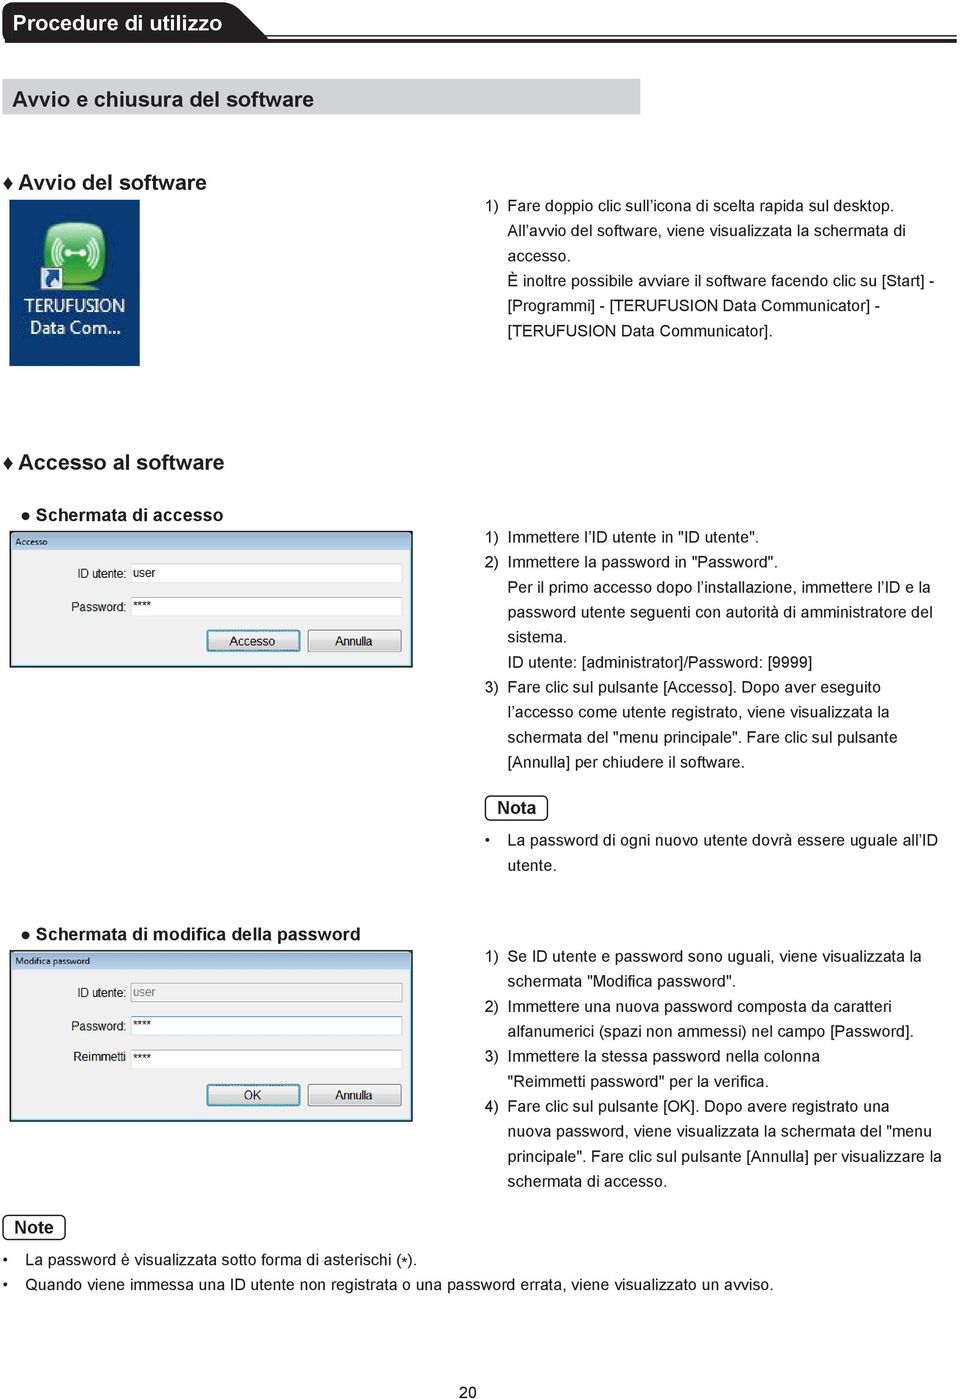 Accesso al software Schermata di accesso 1) Immettere l ID utente in "ID utente". 2) Immettere la password in "Password".